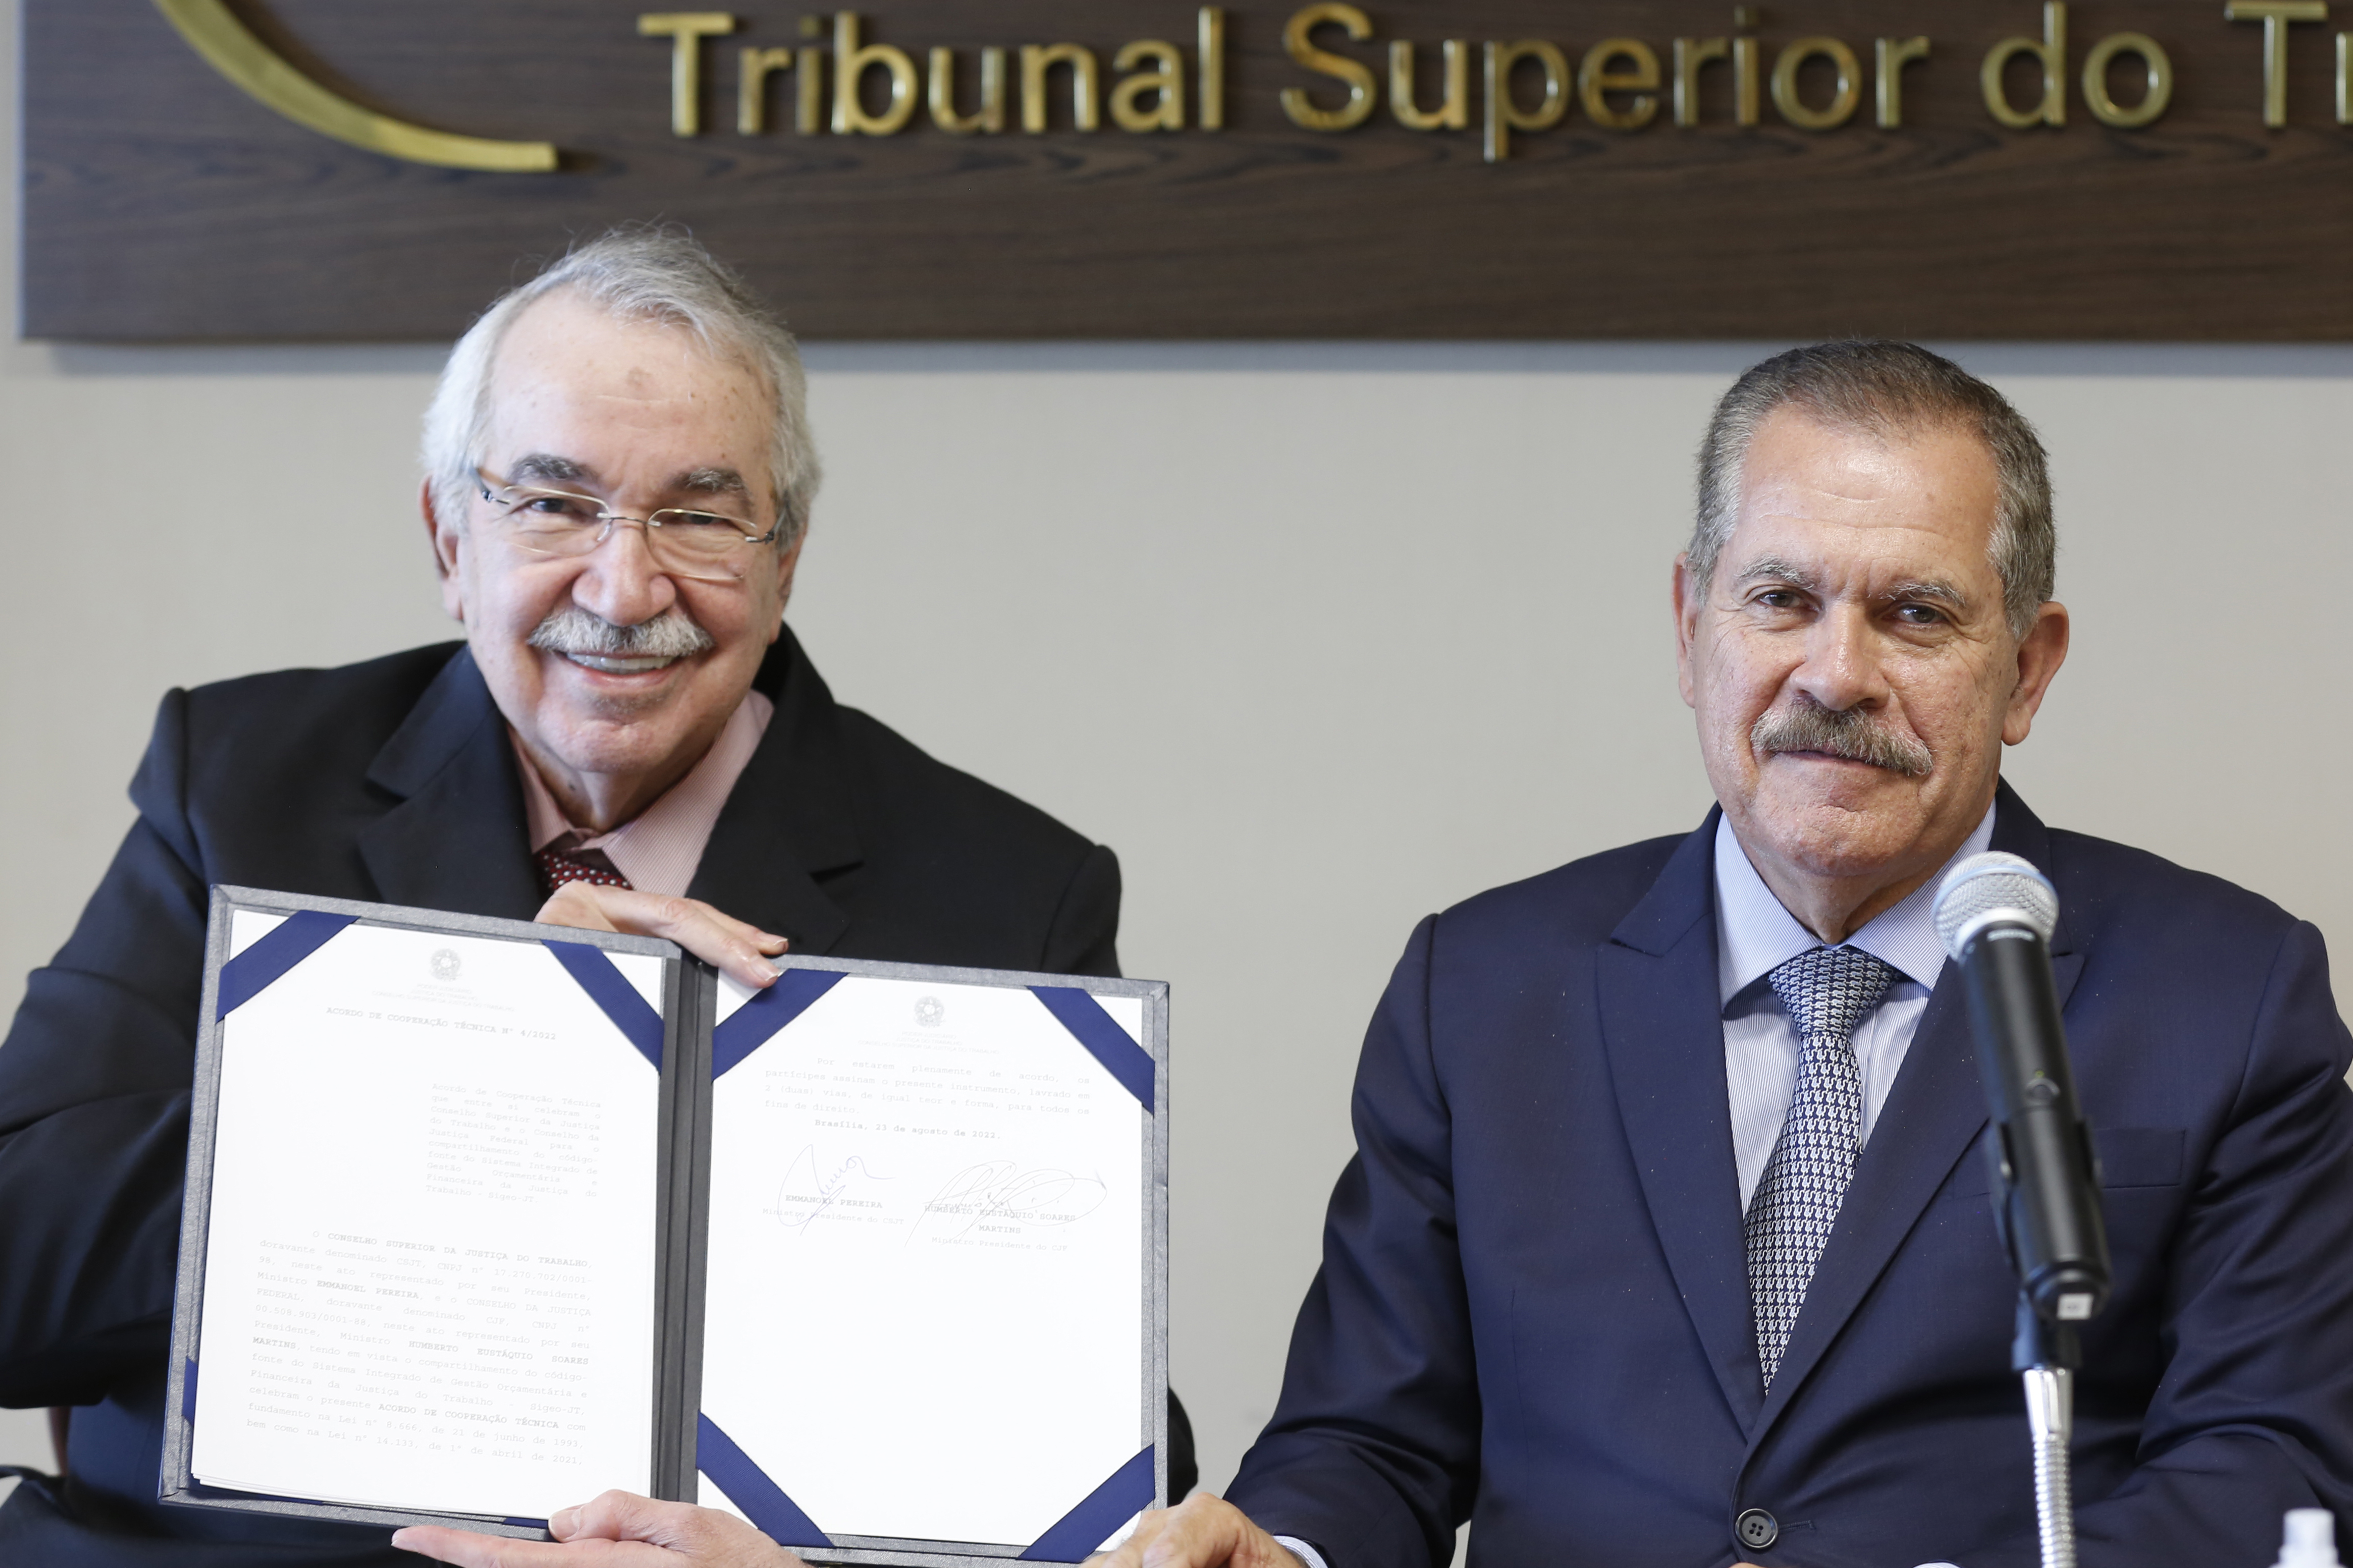 Presidente do TST e do CSJT, ministro Emmanoel Pereira, e o presidente do STJ e CSJF, ministro Humberto Martins